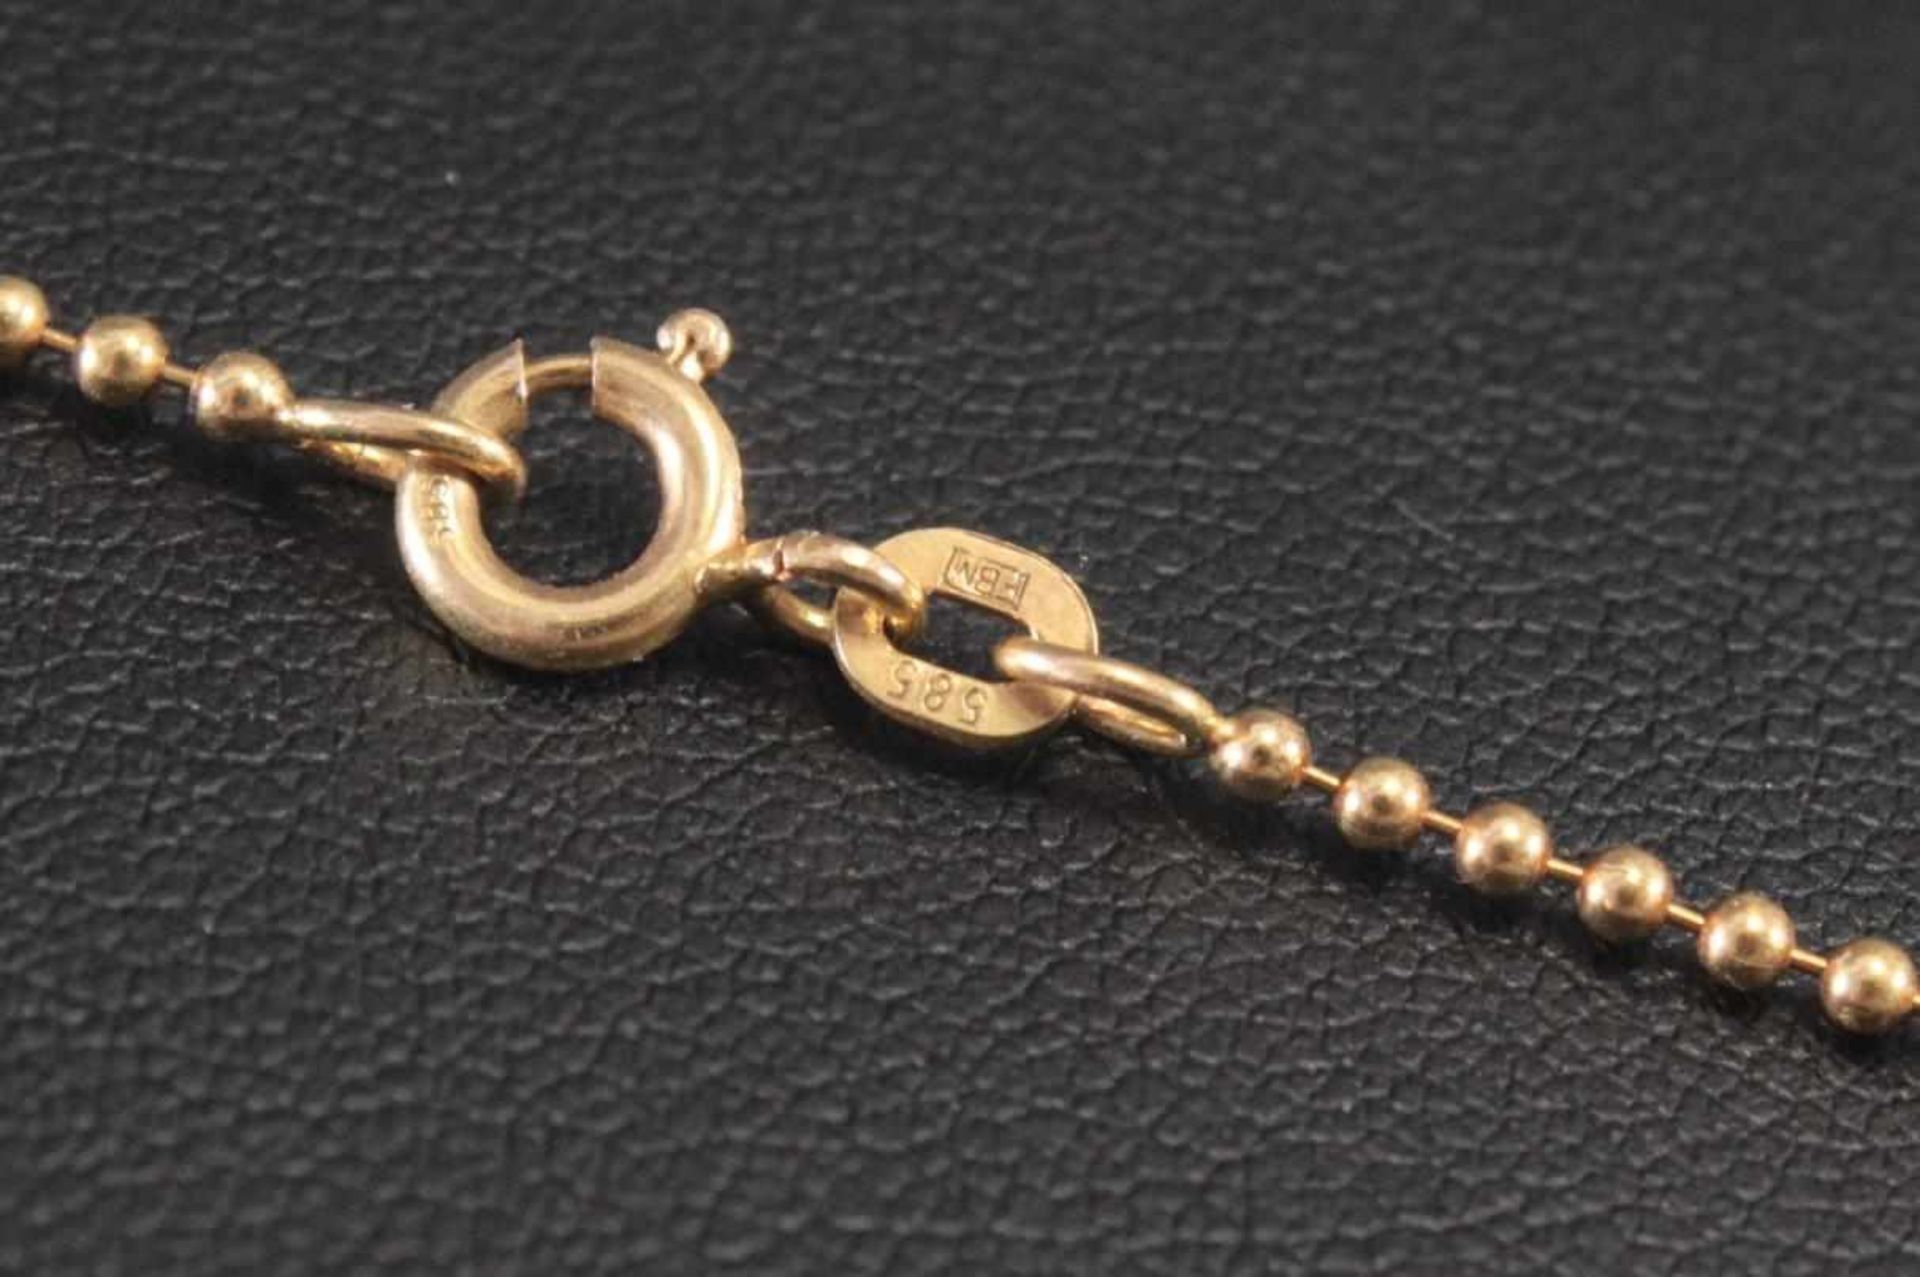 Halskette, 14 Karat GelbgoldLänge 44 cm, 3,5 g- - -20.00 % buyer's premium on the hammer price19. - Bild 3 aus 3